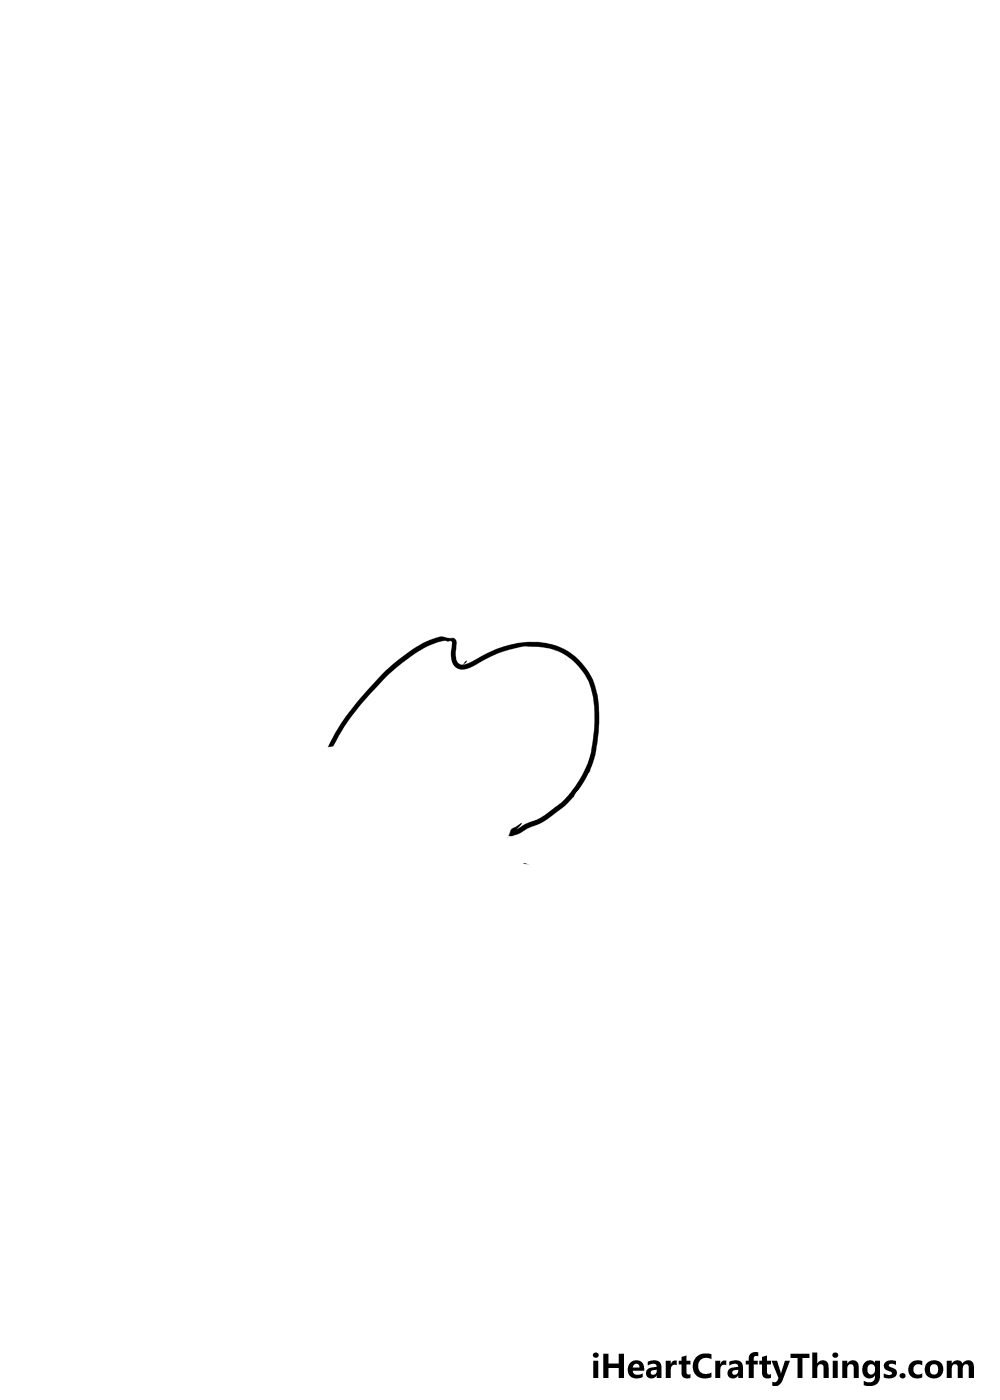 Como desenhar um peixe-gato passo 1